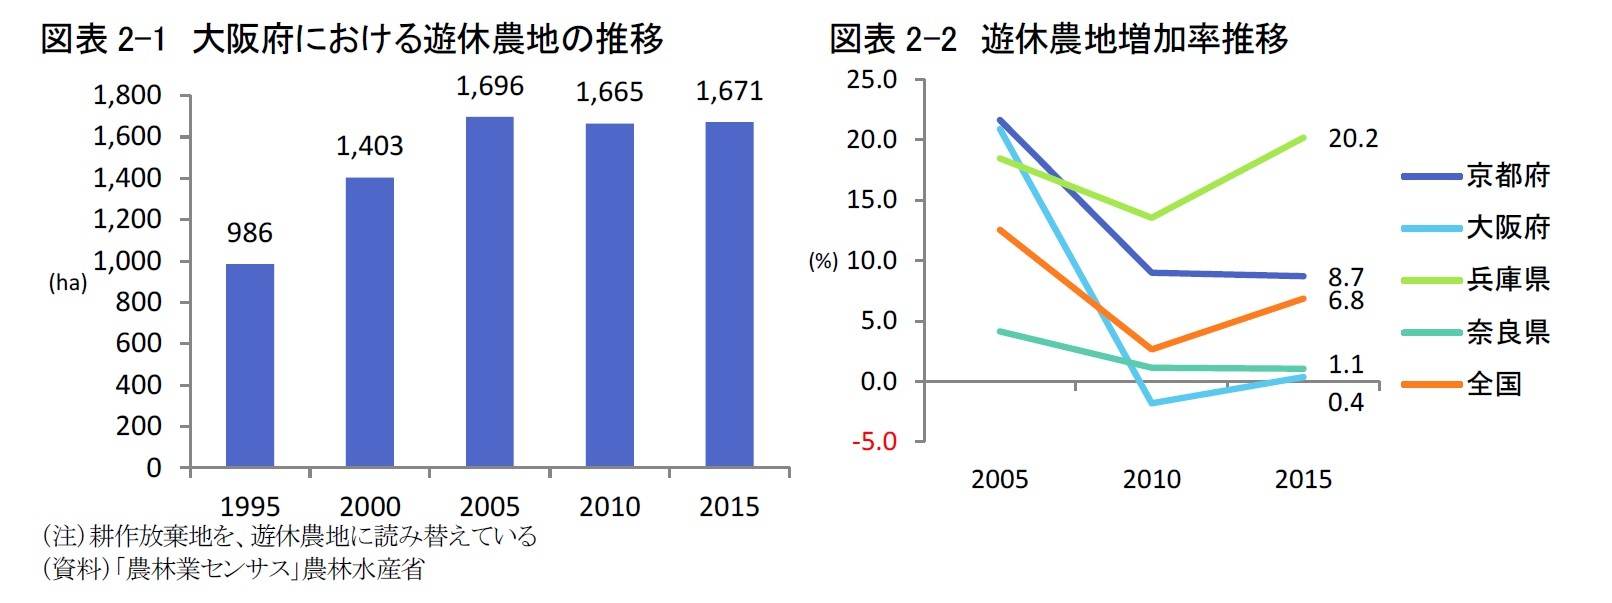 図表2-1 大阪府における遊休農地の推移/図表2-2 遊休農地増加率推移